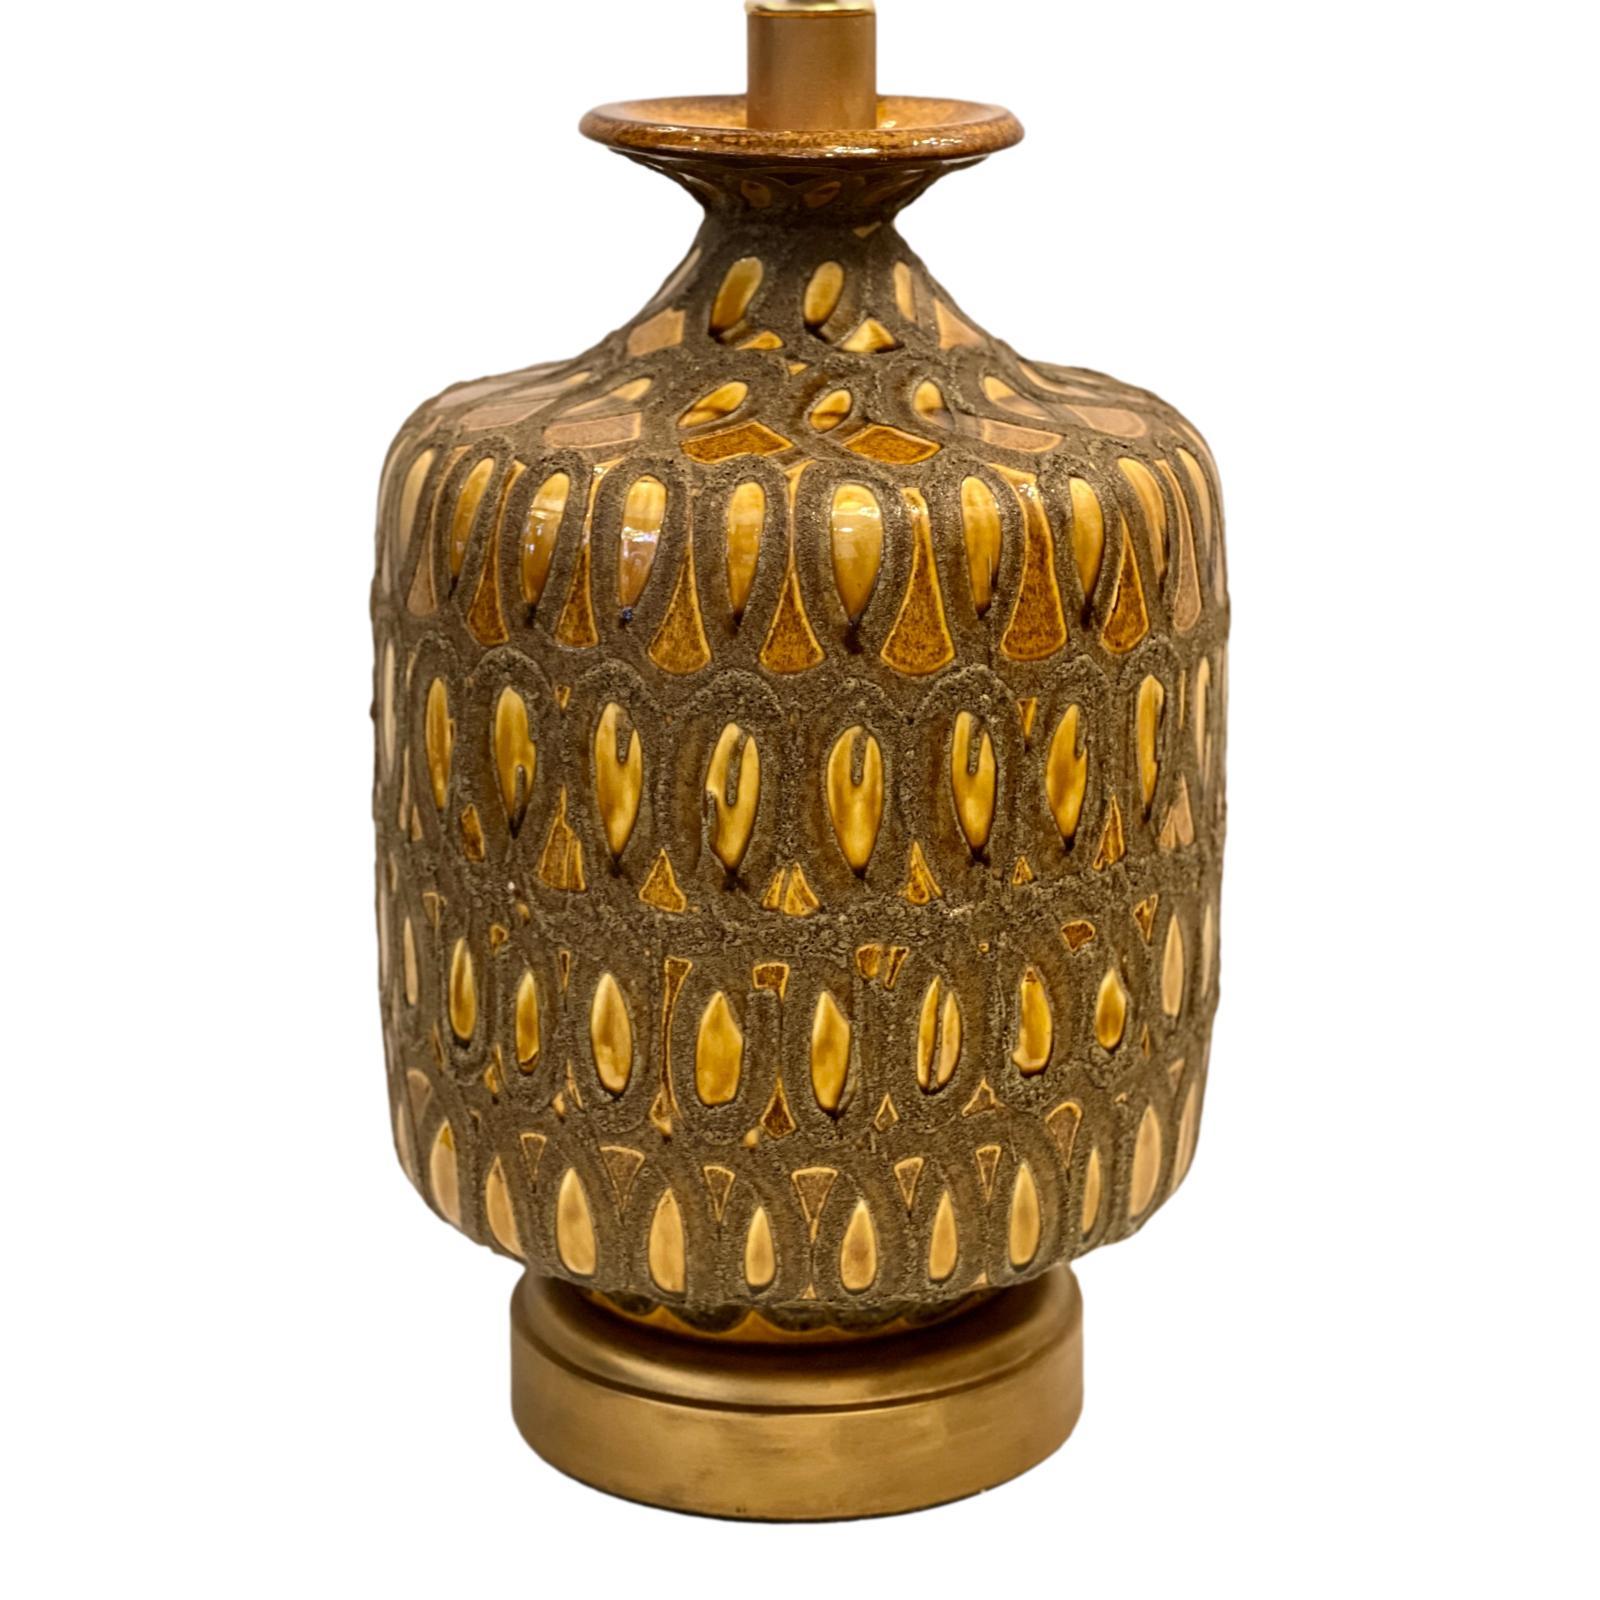 Italienische Keramik-Tischlampe aus den 1960er Jahren mit Bronzefuß.

Abmessungen:
Höhe des Körpers: 20